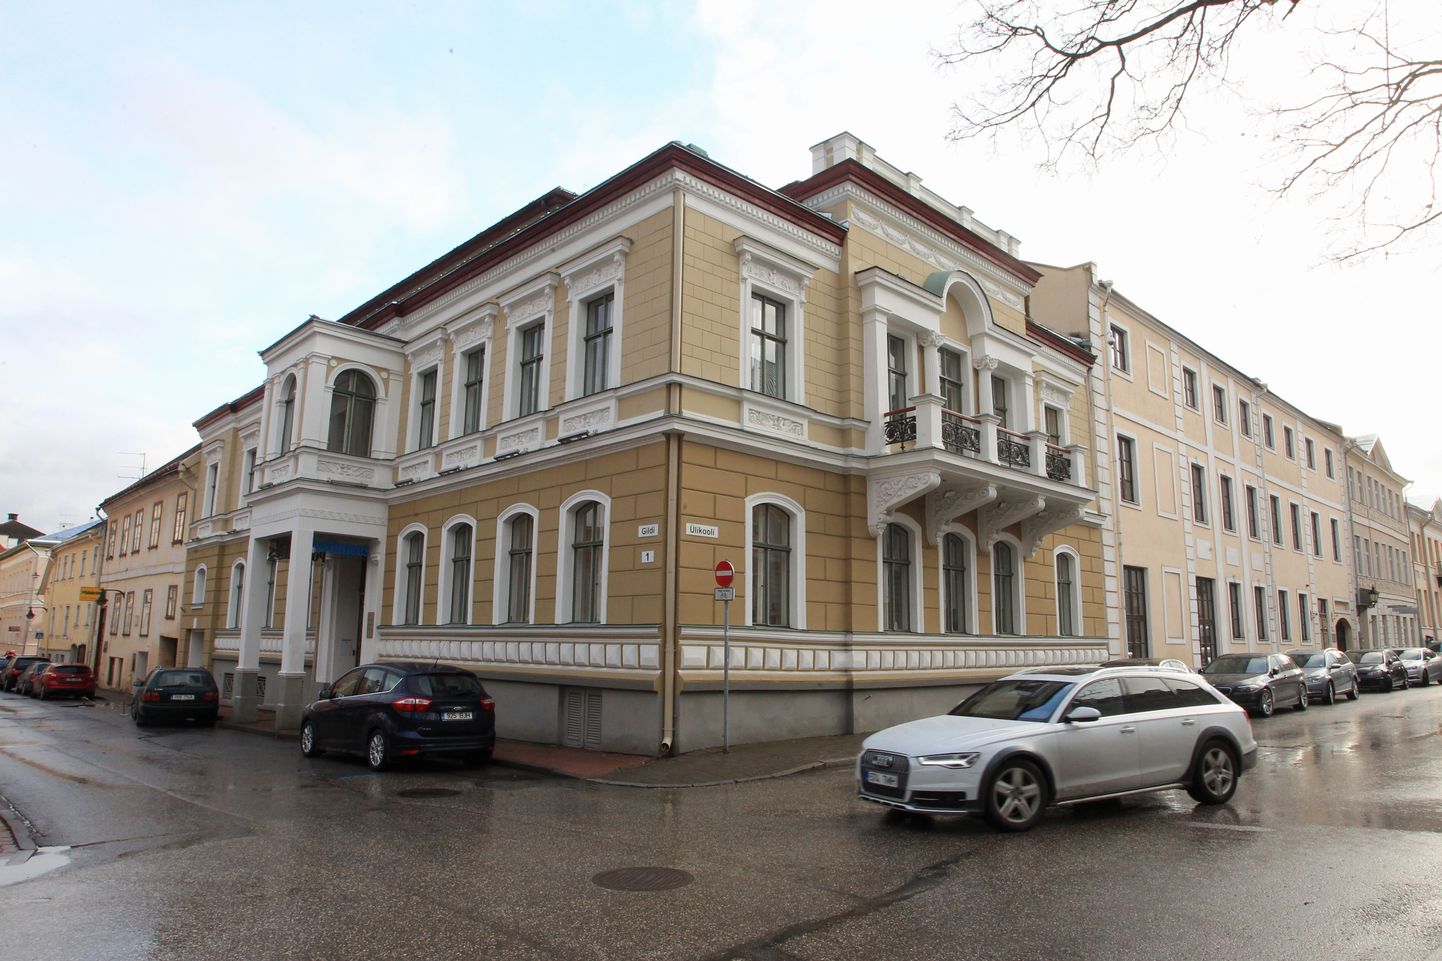 Postimehe ajalooline maja Tartus Gildi tänaval.